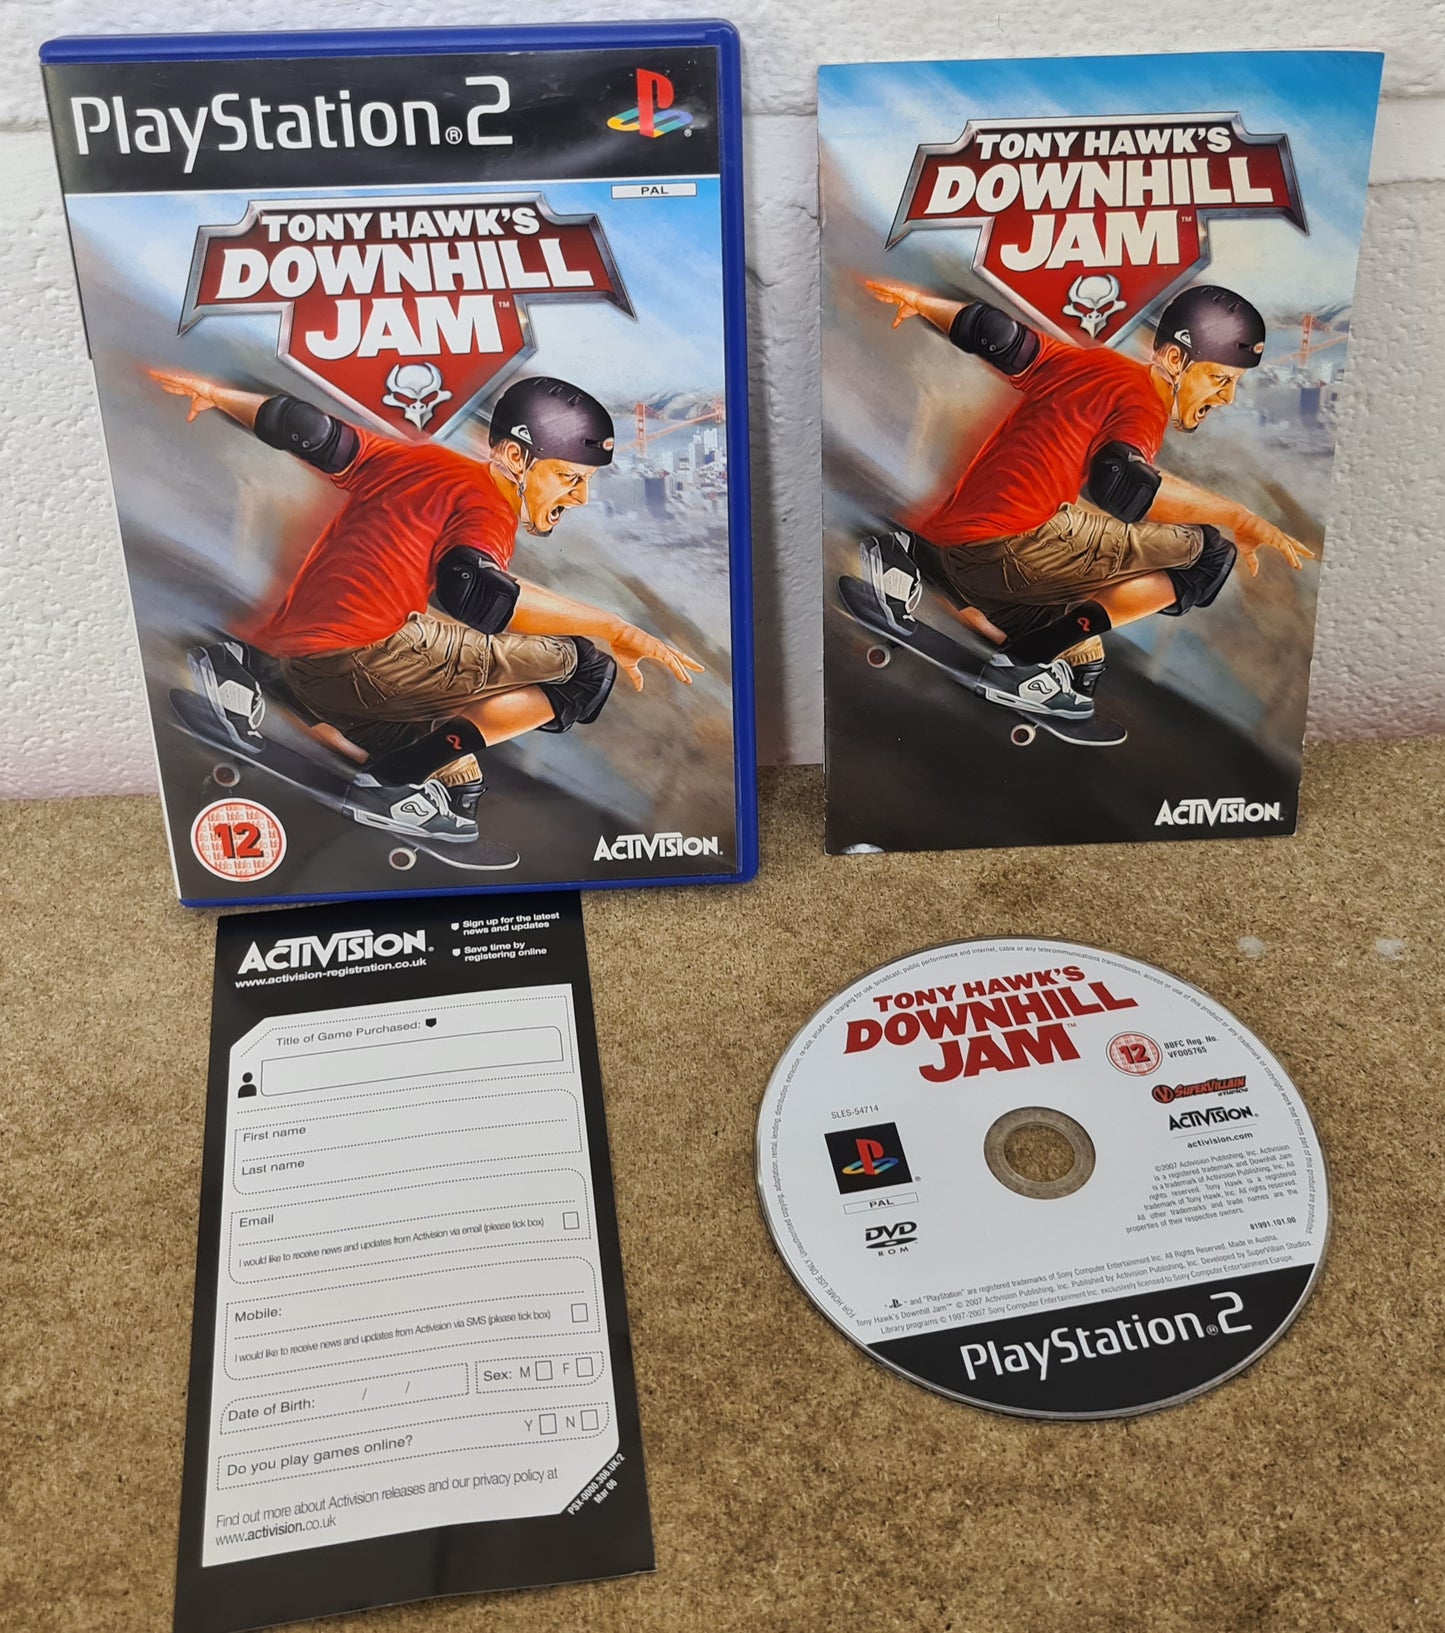 Tony Hawk's Downhill Jam Sony Playstation 2 (PS2) Game